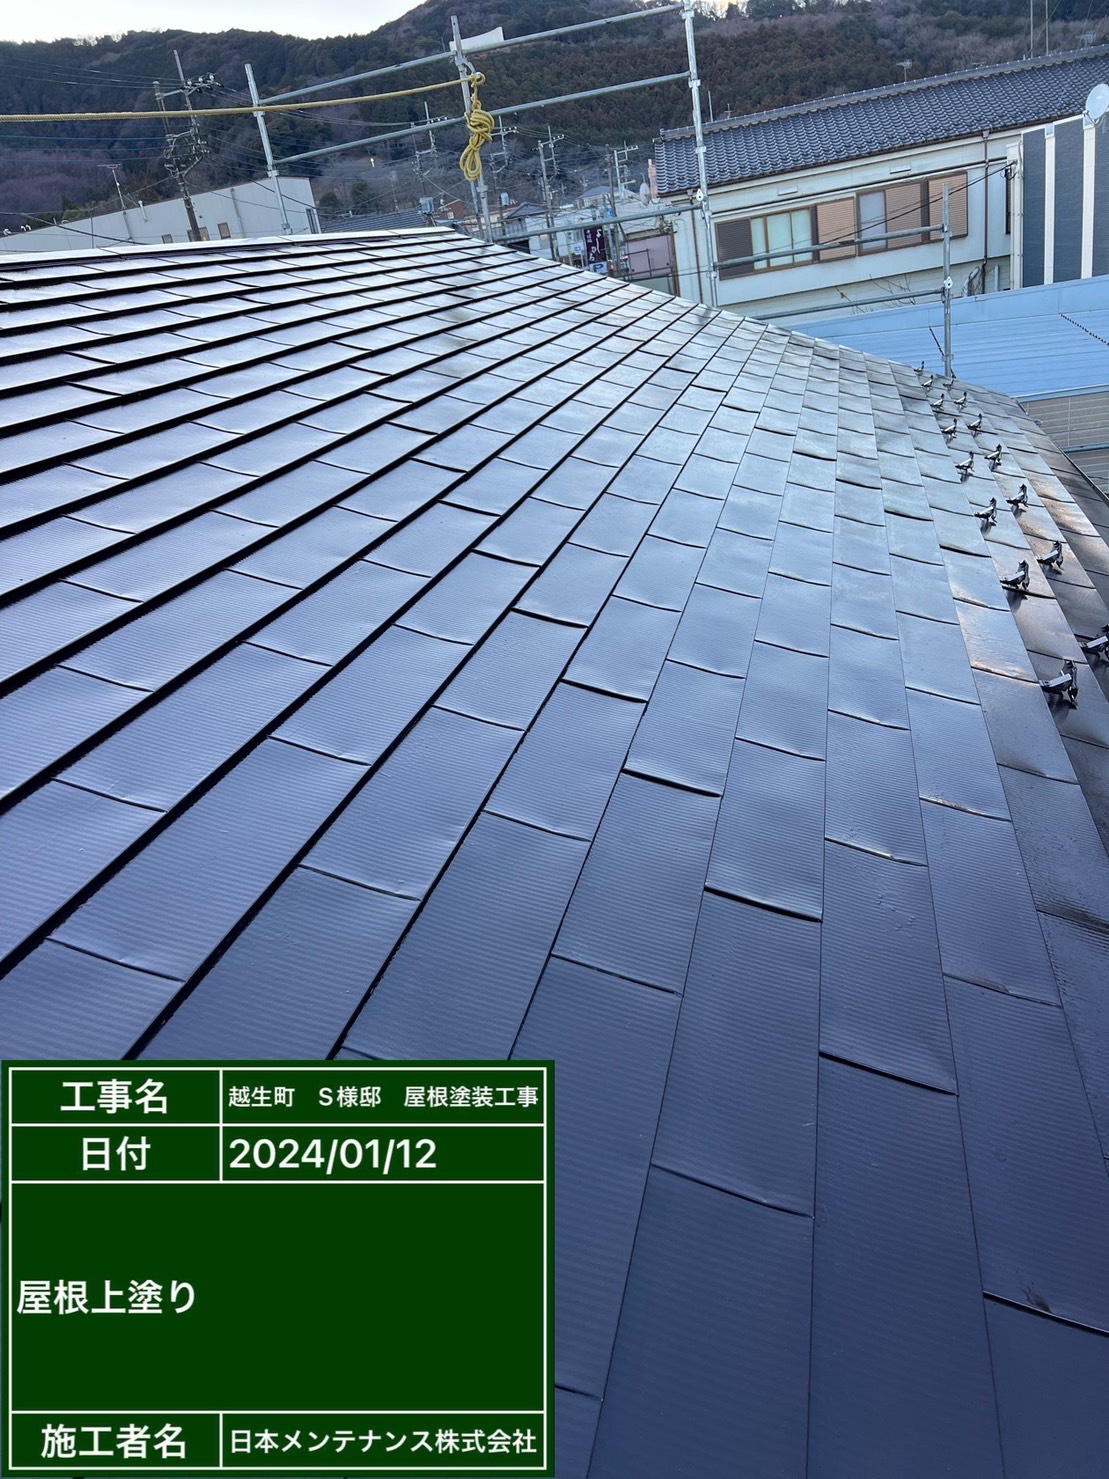 埼玉県越生町で金属屋根を茶色に塗り替えました。